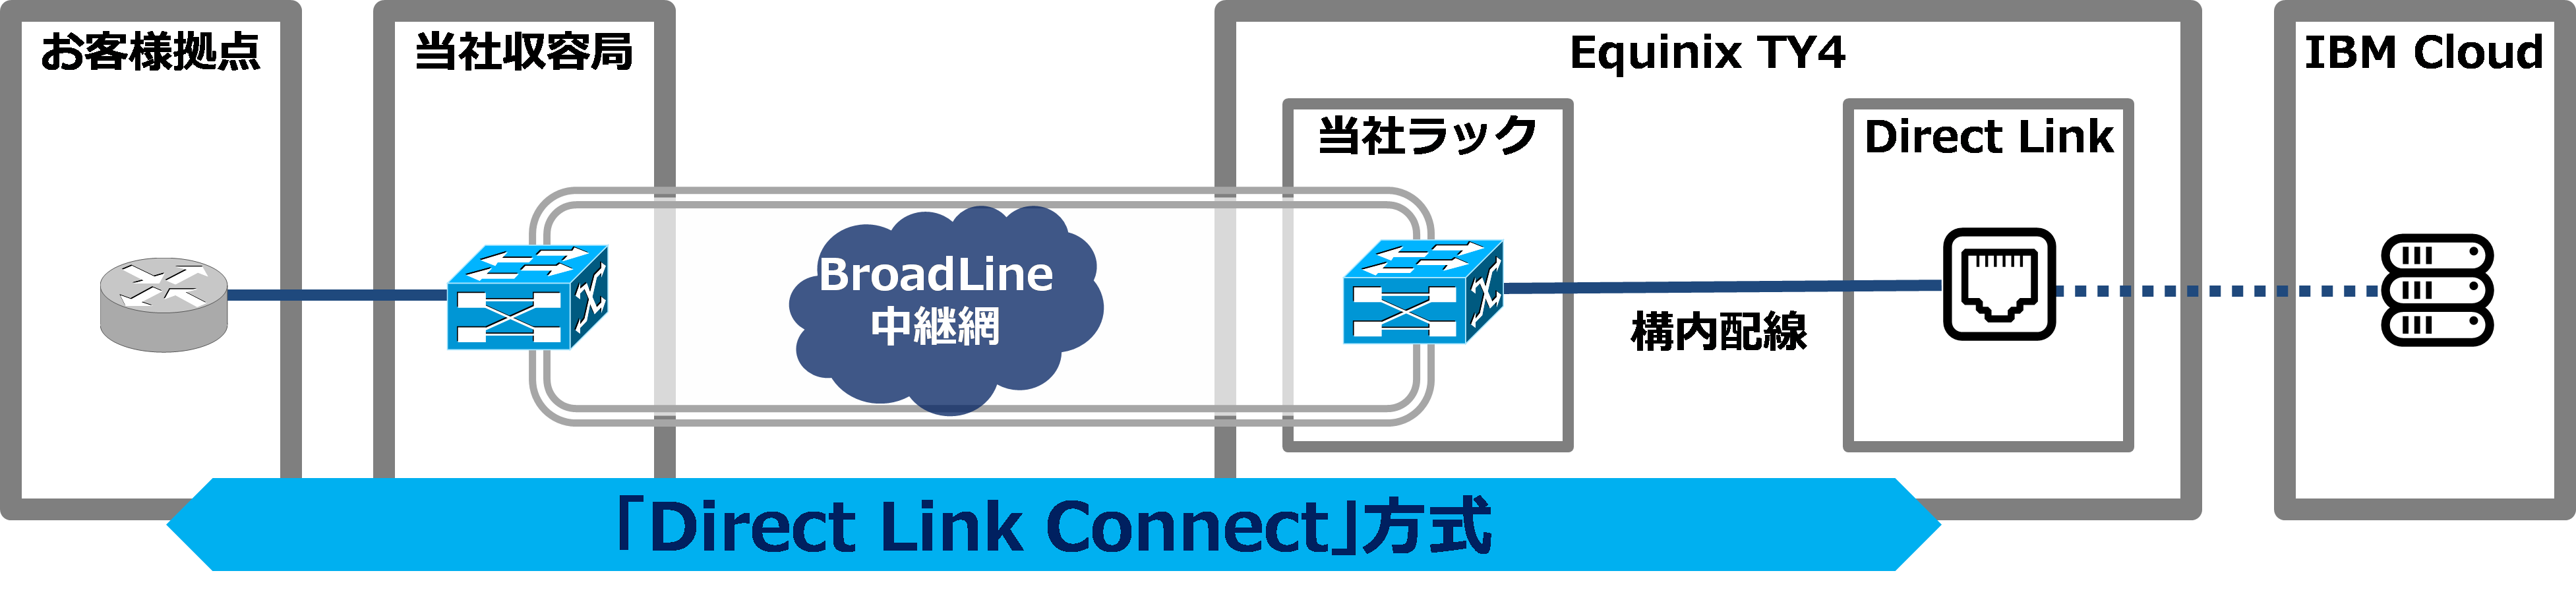 キャリア 企業向け通信サービスbroadline Ibm Cloudの閉域網接続サービス Direct Link Connect 方式に対応 Tokaicomのプレスリリース